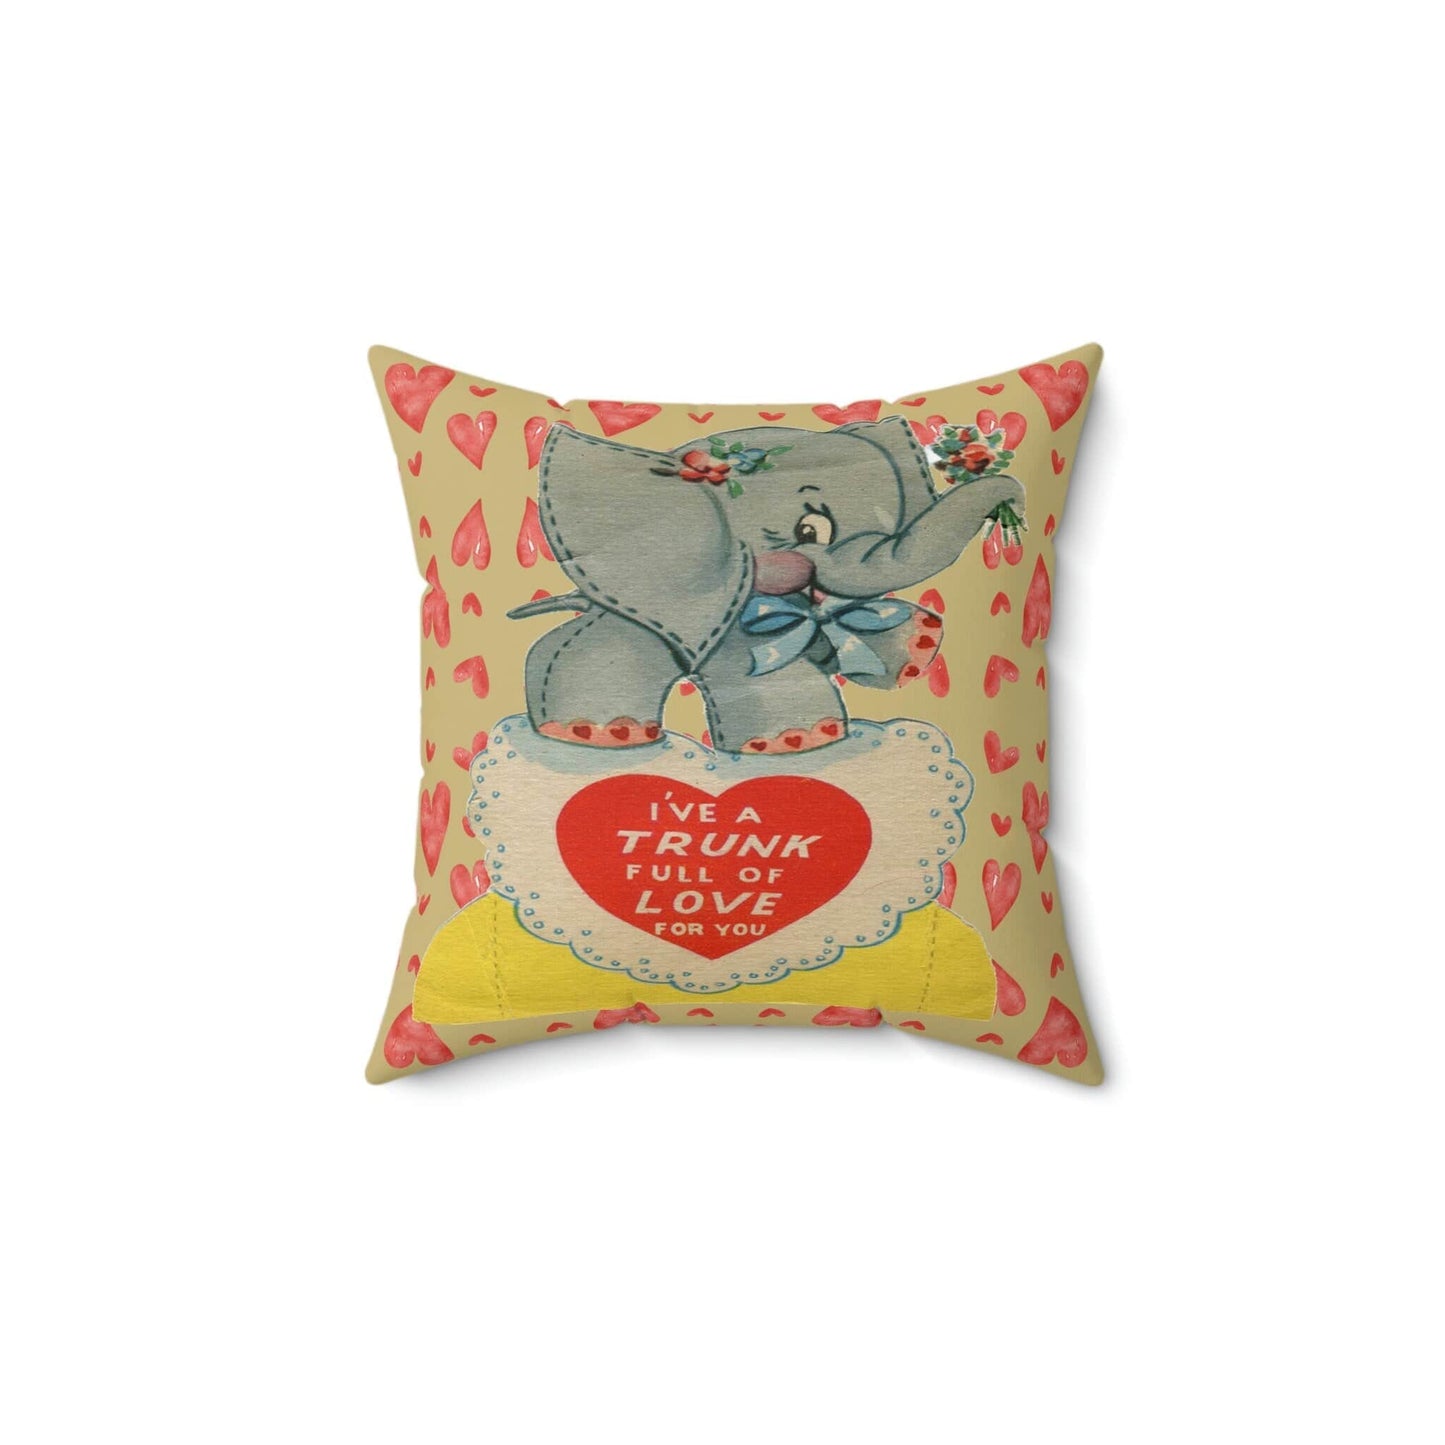 Kate McEnroe New York Retro Vintage Kitschy Elephant Valentine Throw Pillow Cover Throw Pillow Covers 16" × 16" 16328005609434771367